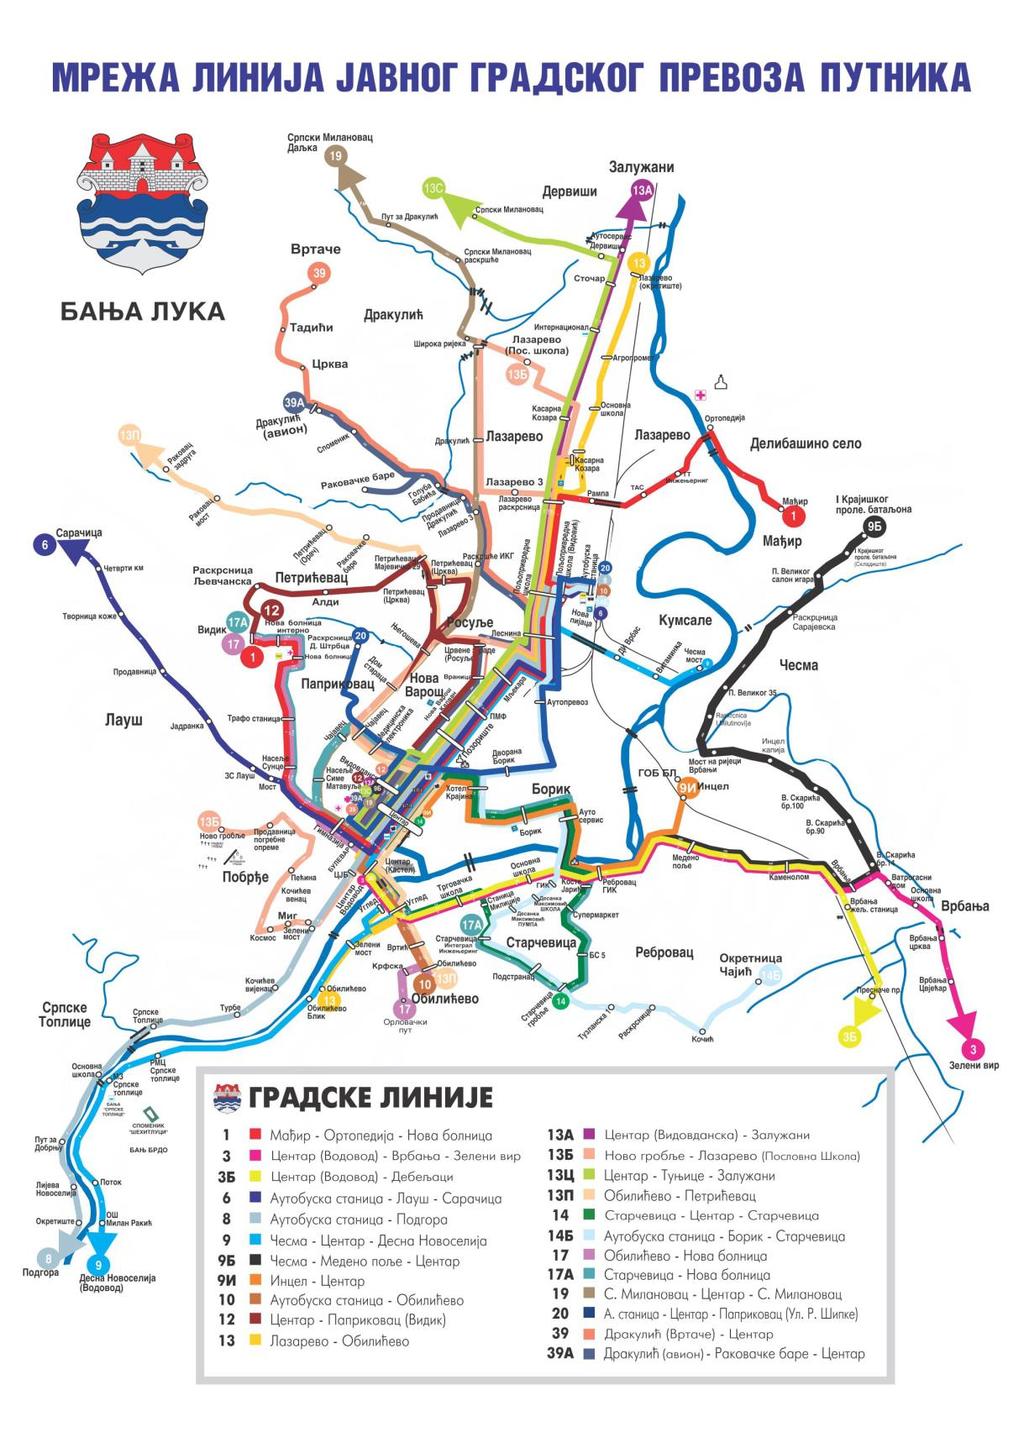 Prilog broj 3 Slika 1: Grafički prikaz mreže linija JP-a putnika u gradskom saobraćaju na području grada Banja Luka